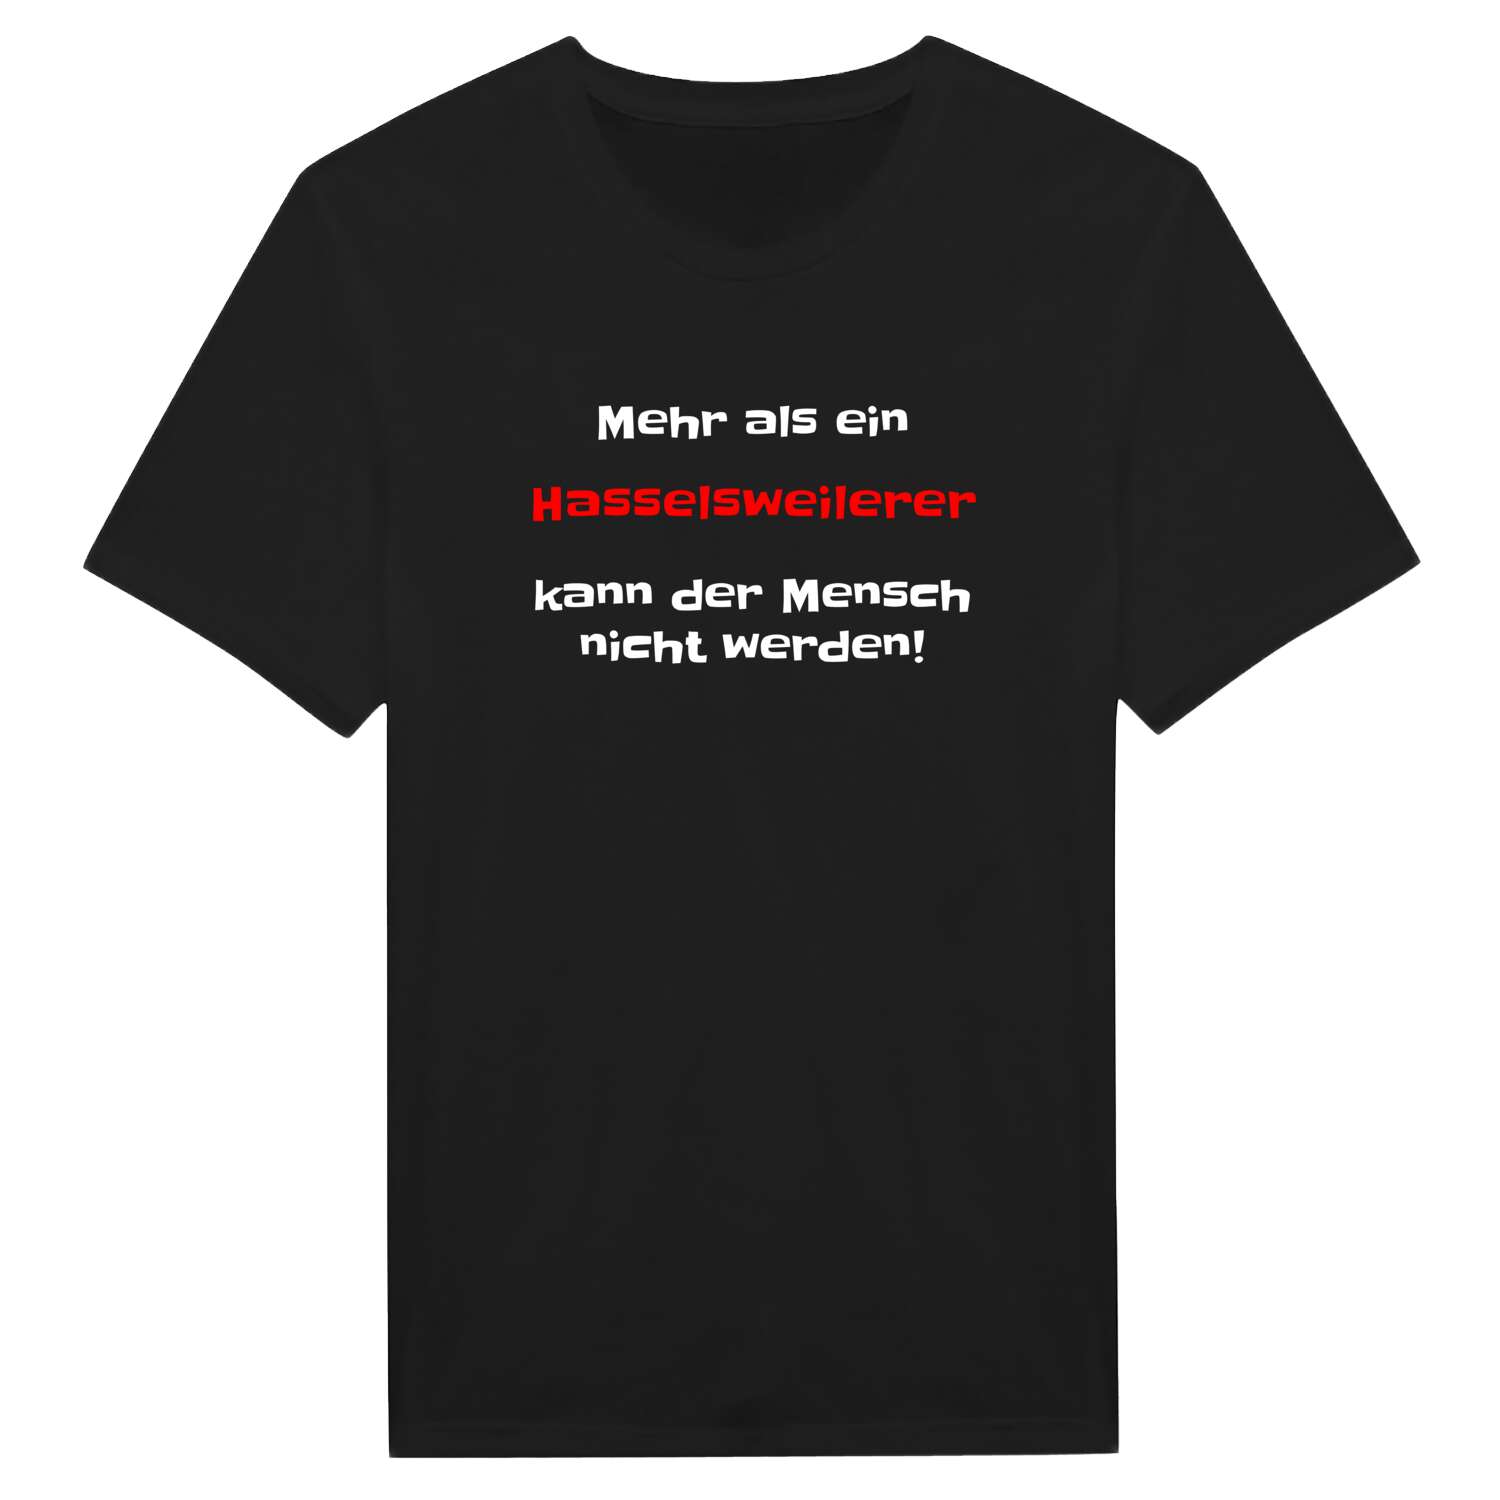 Hasselsweiler T-Shirt »Mehr als ein«